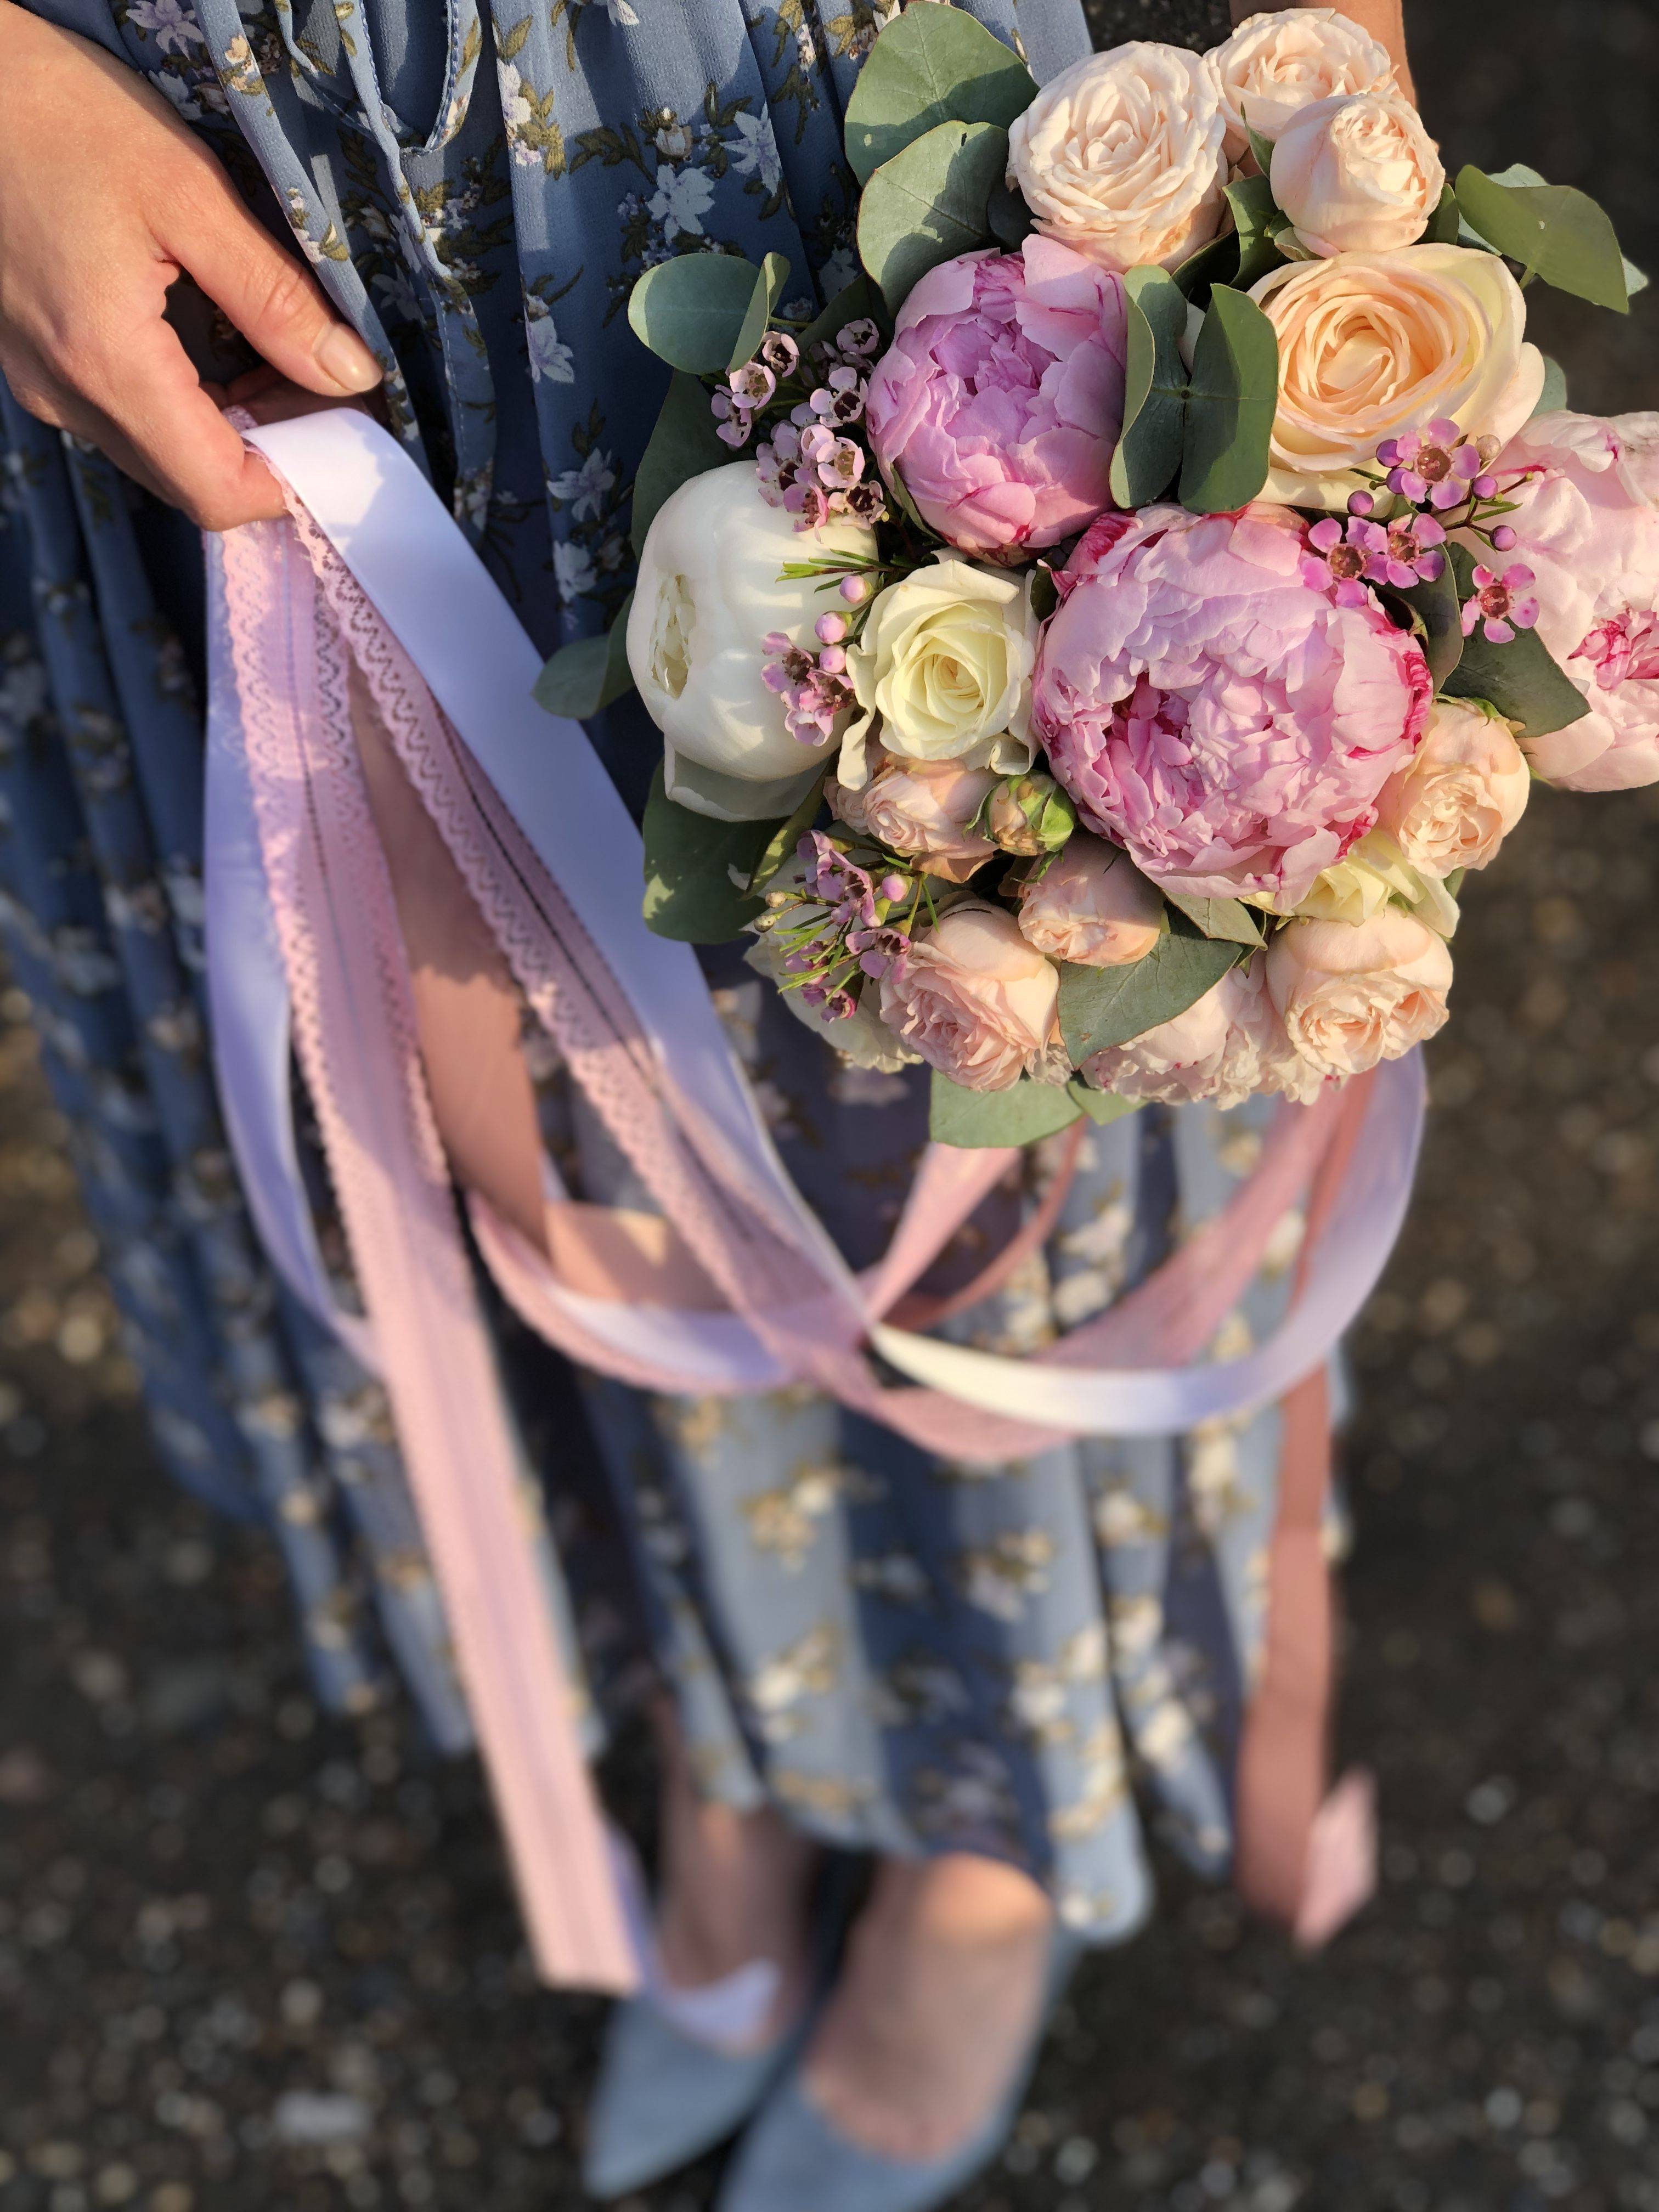 Какие цветы дарить на свадьбу